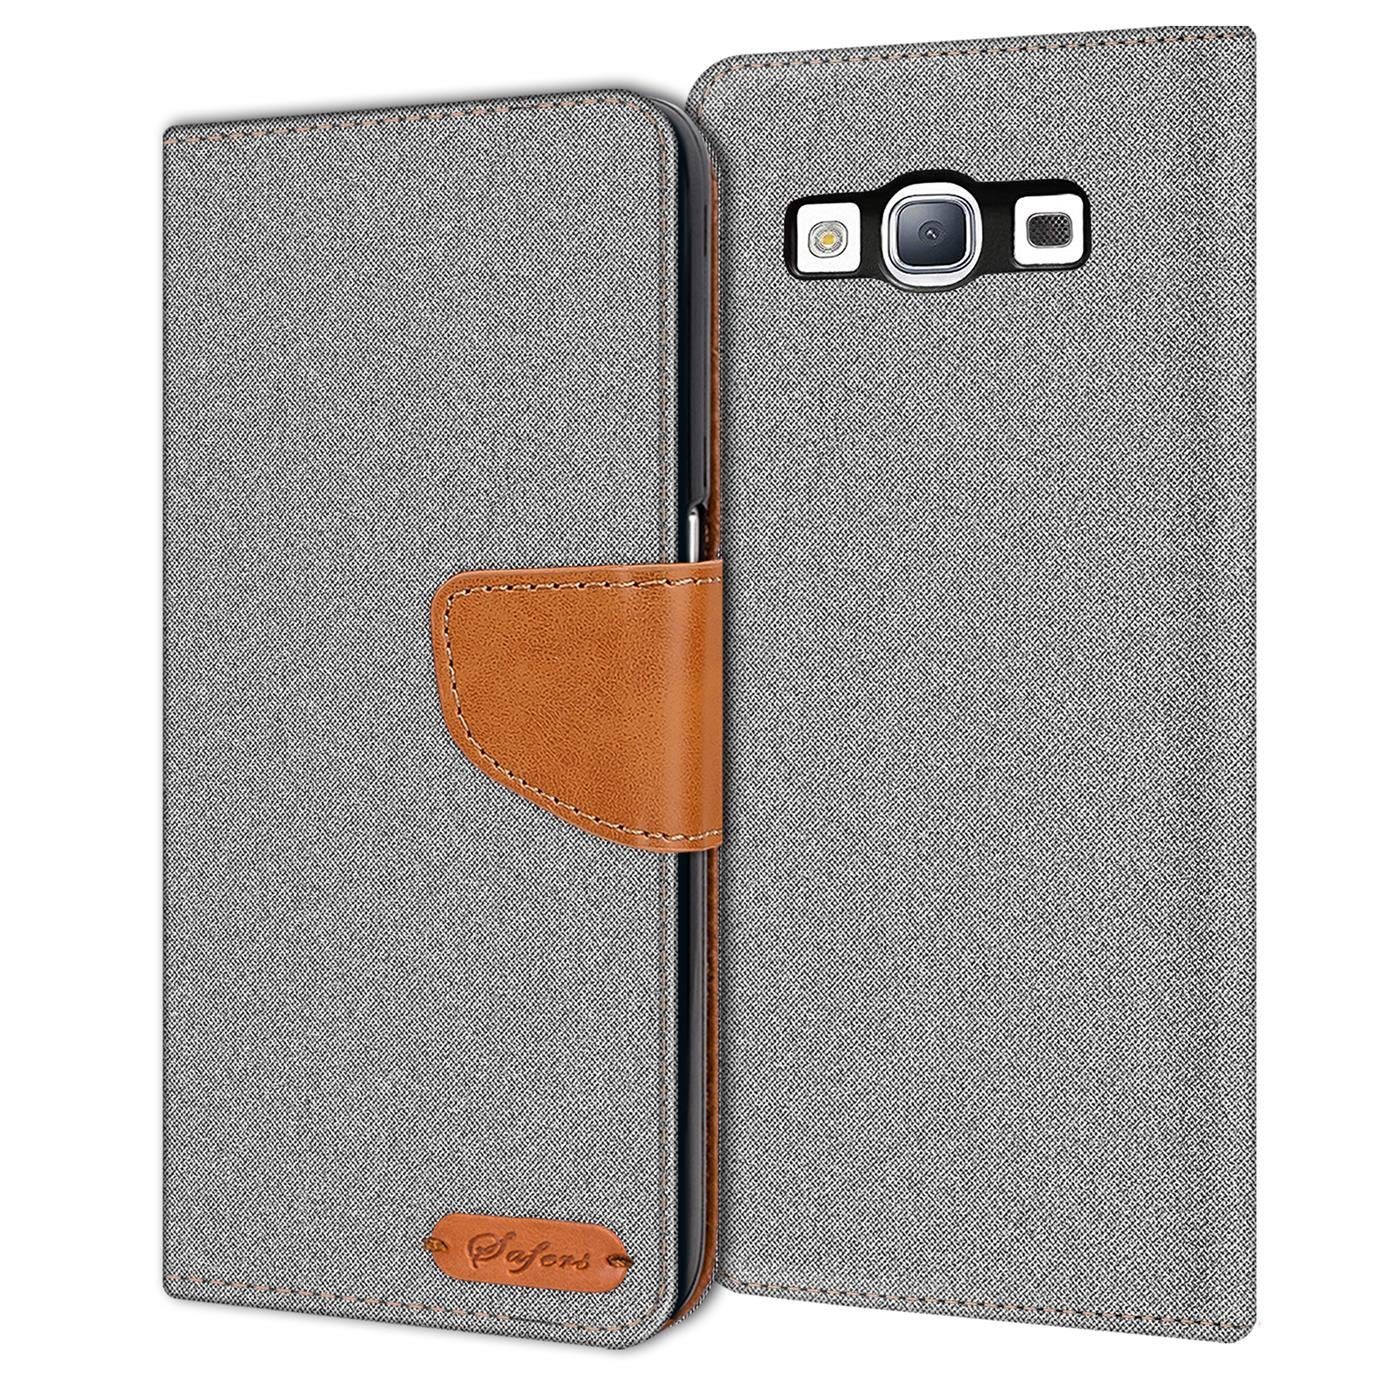 CoolGadget Handyhülle »Denim Schutzhülle Flip Case für Samsung Galaxy S3 / S3  Neo« 4,8 Zoll, Book Cover Handy Tasche Hülle für Samsung S3 Klapphülle